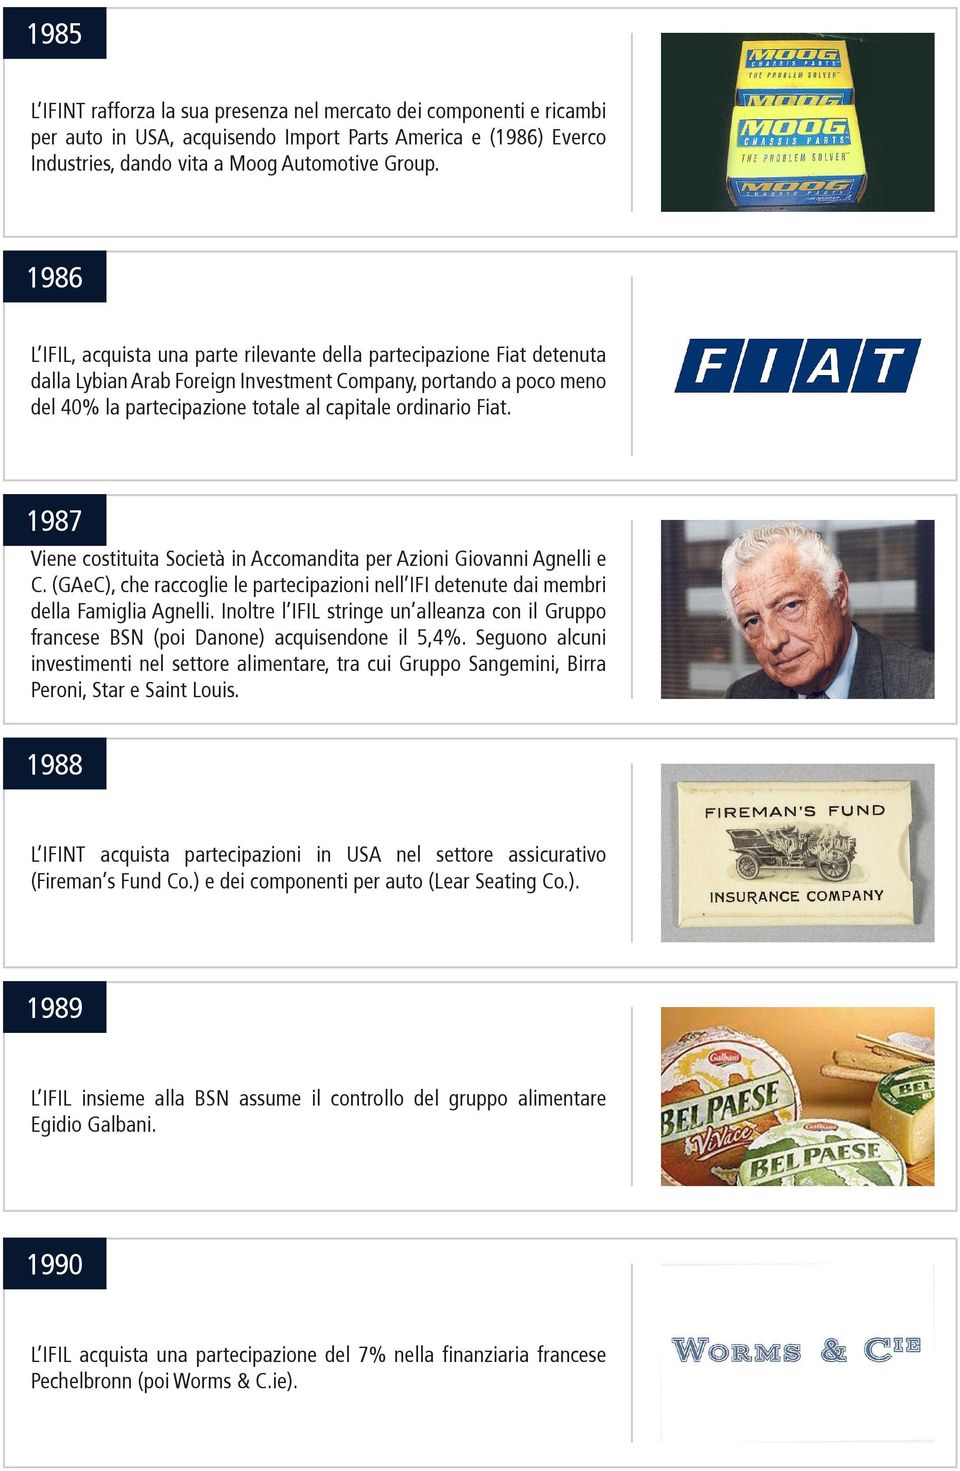 Fiat. 1987 Viene costituita Società in Accomandita per Azioni Giovanni Agnelli e C. (GAeC), che raccoglie le partecipazioni nell IFI detenute dai membri della Famiglia Agnelli.